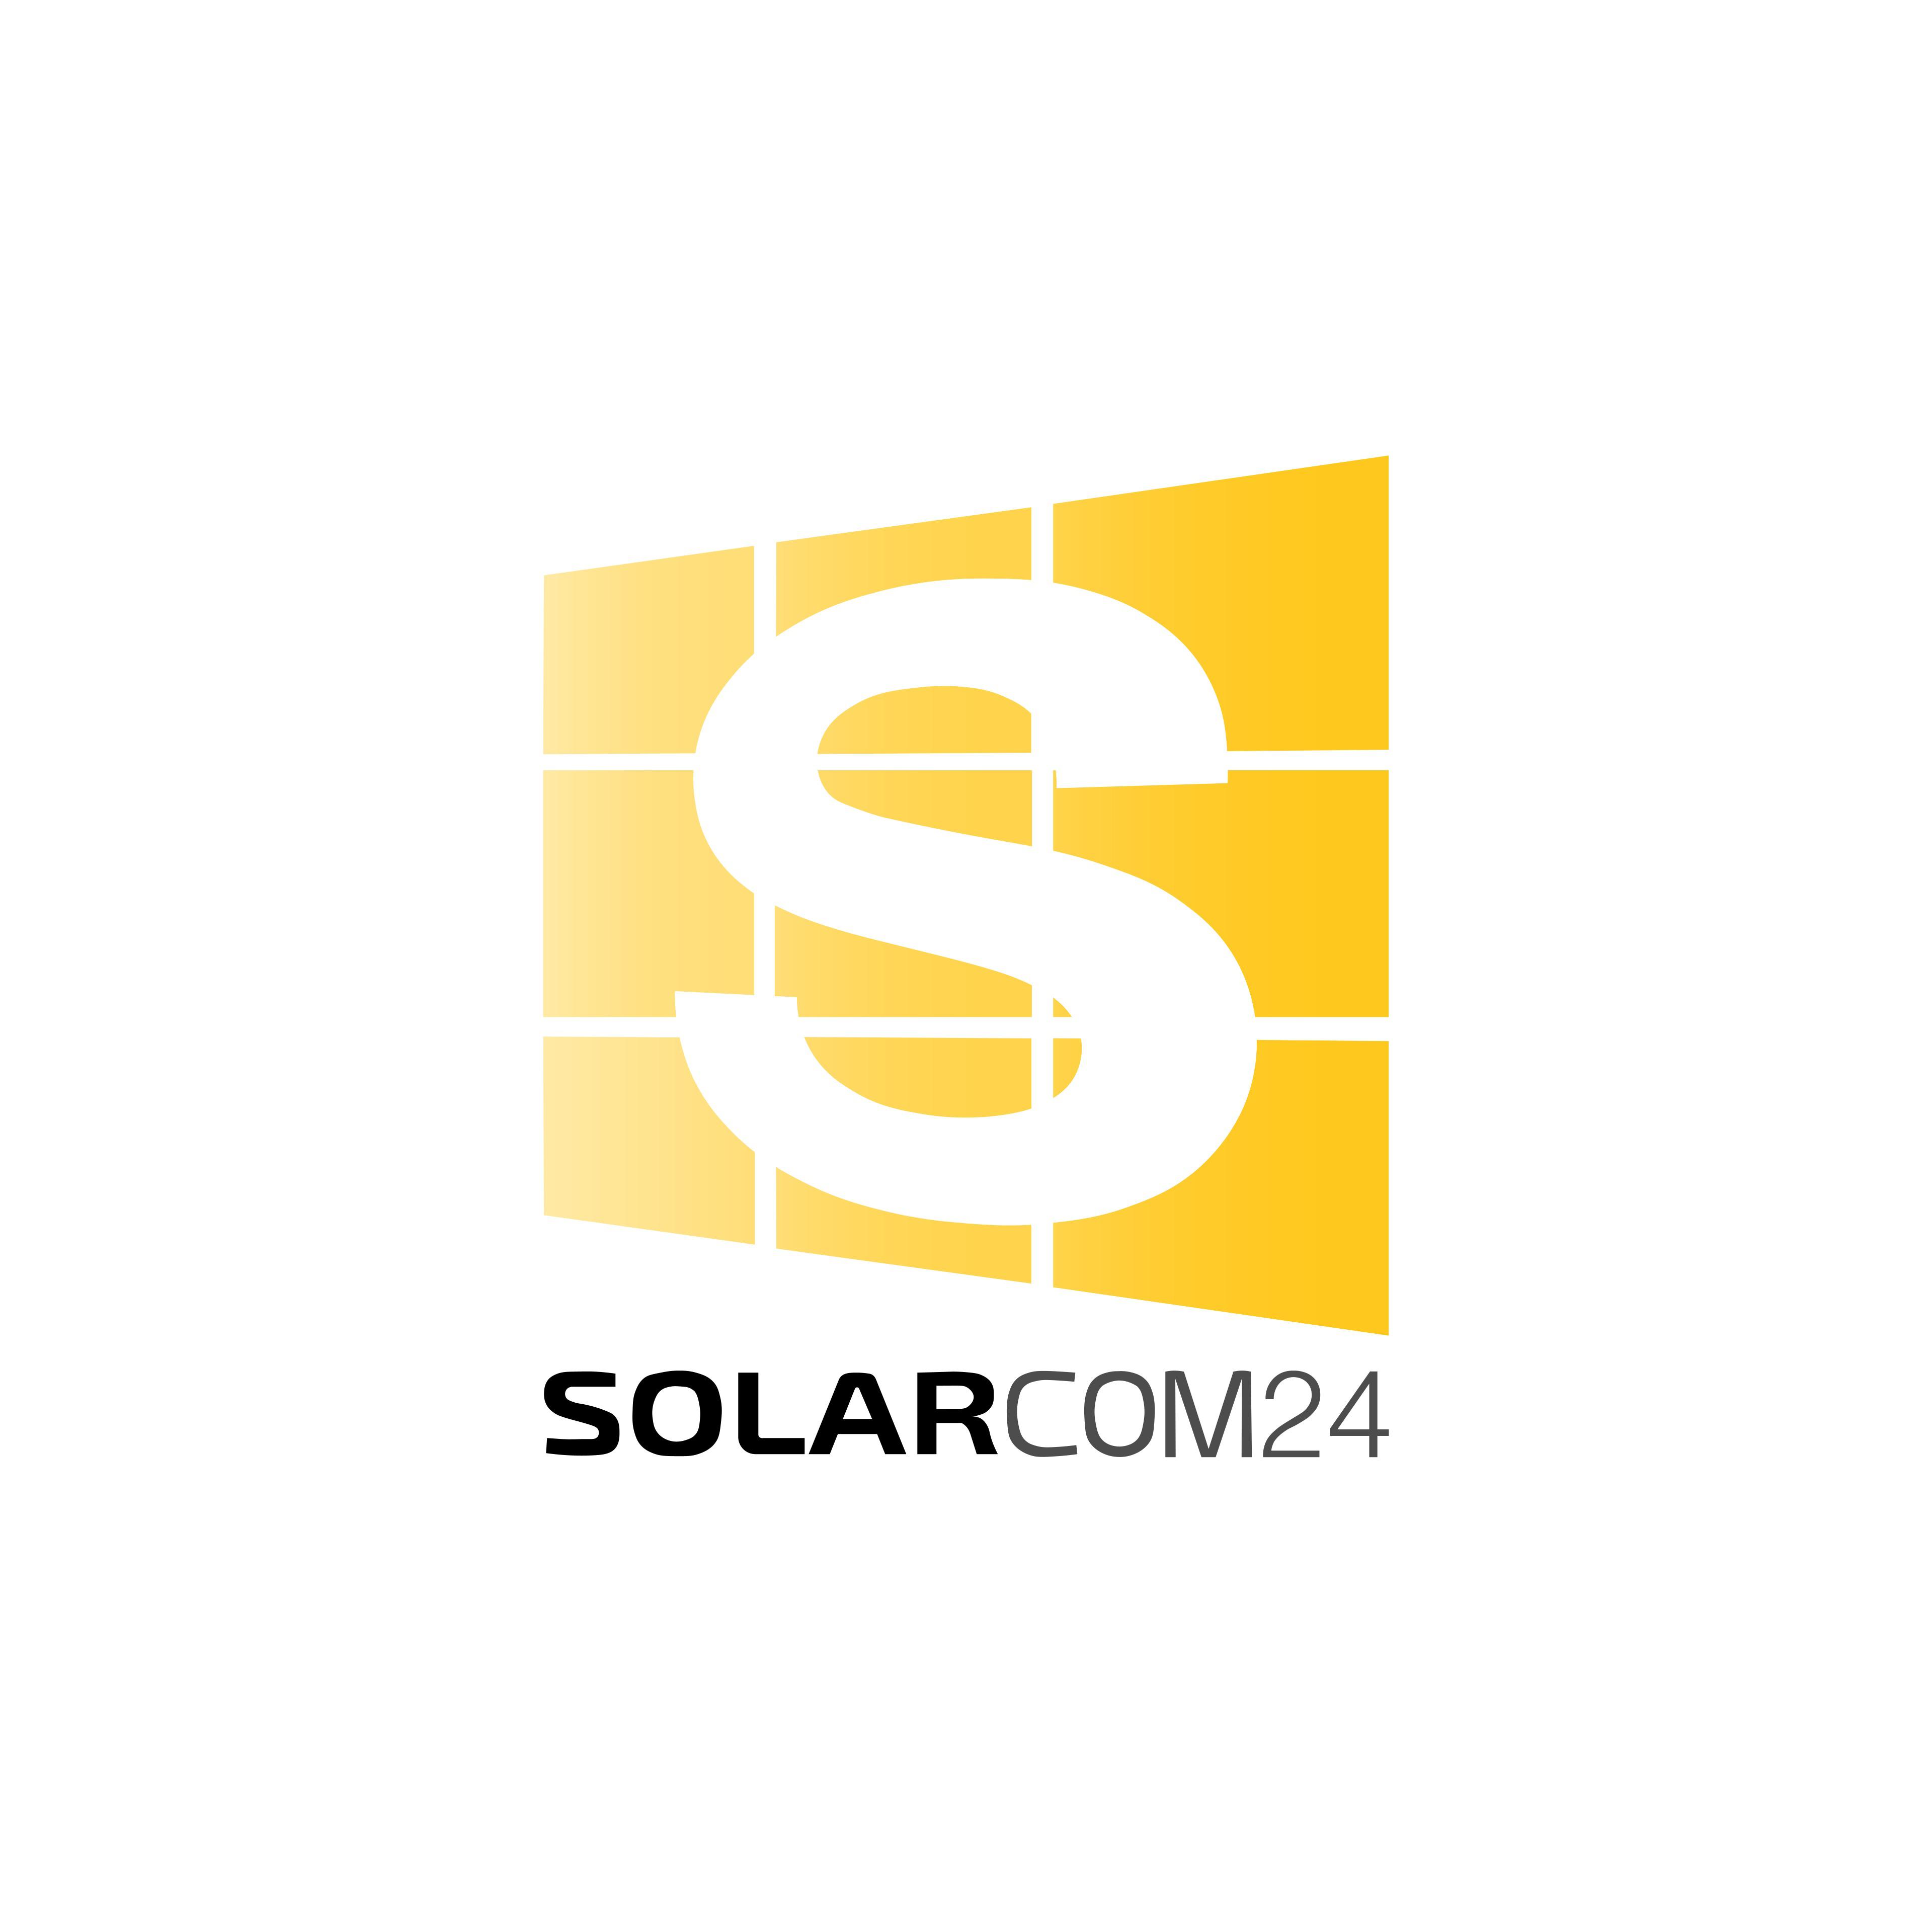 Solarcom24 in Wildau